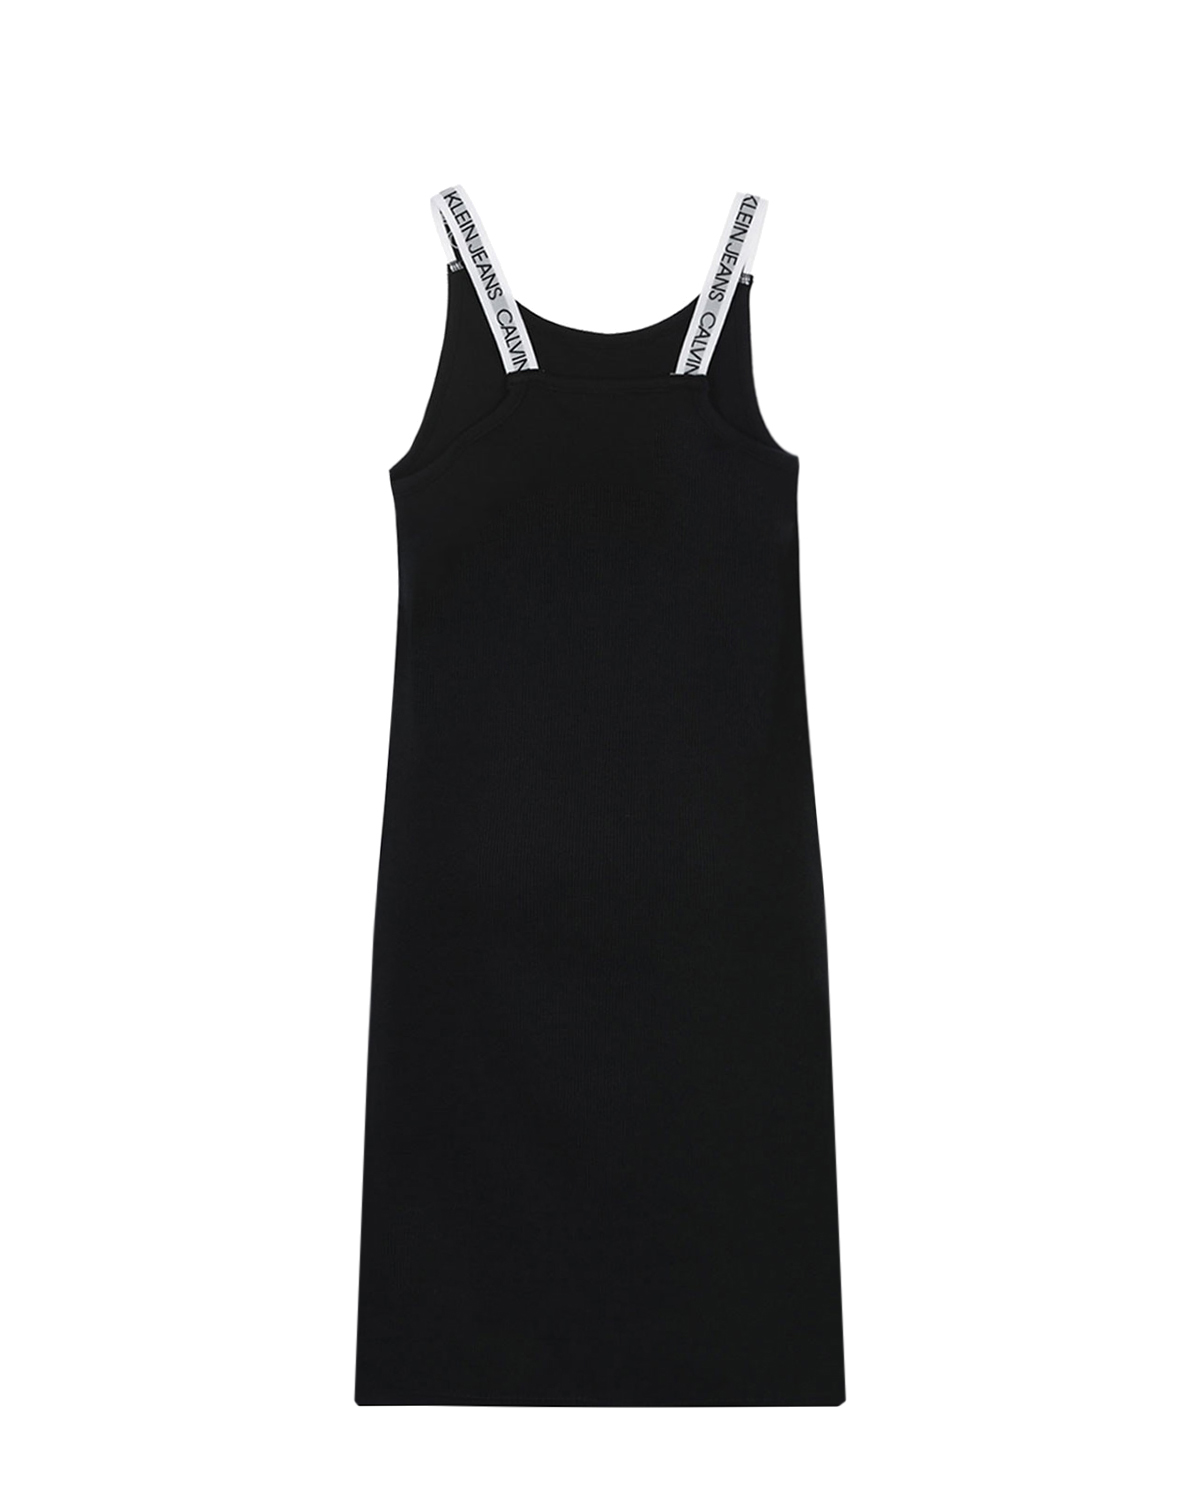 Трикотажное платье с брендированными лямками Calvin Klein детское, размер 140, цвет черный - фото 2